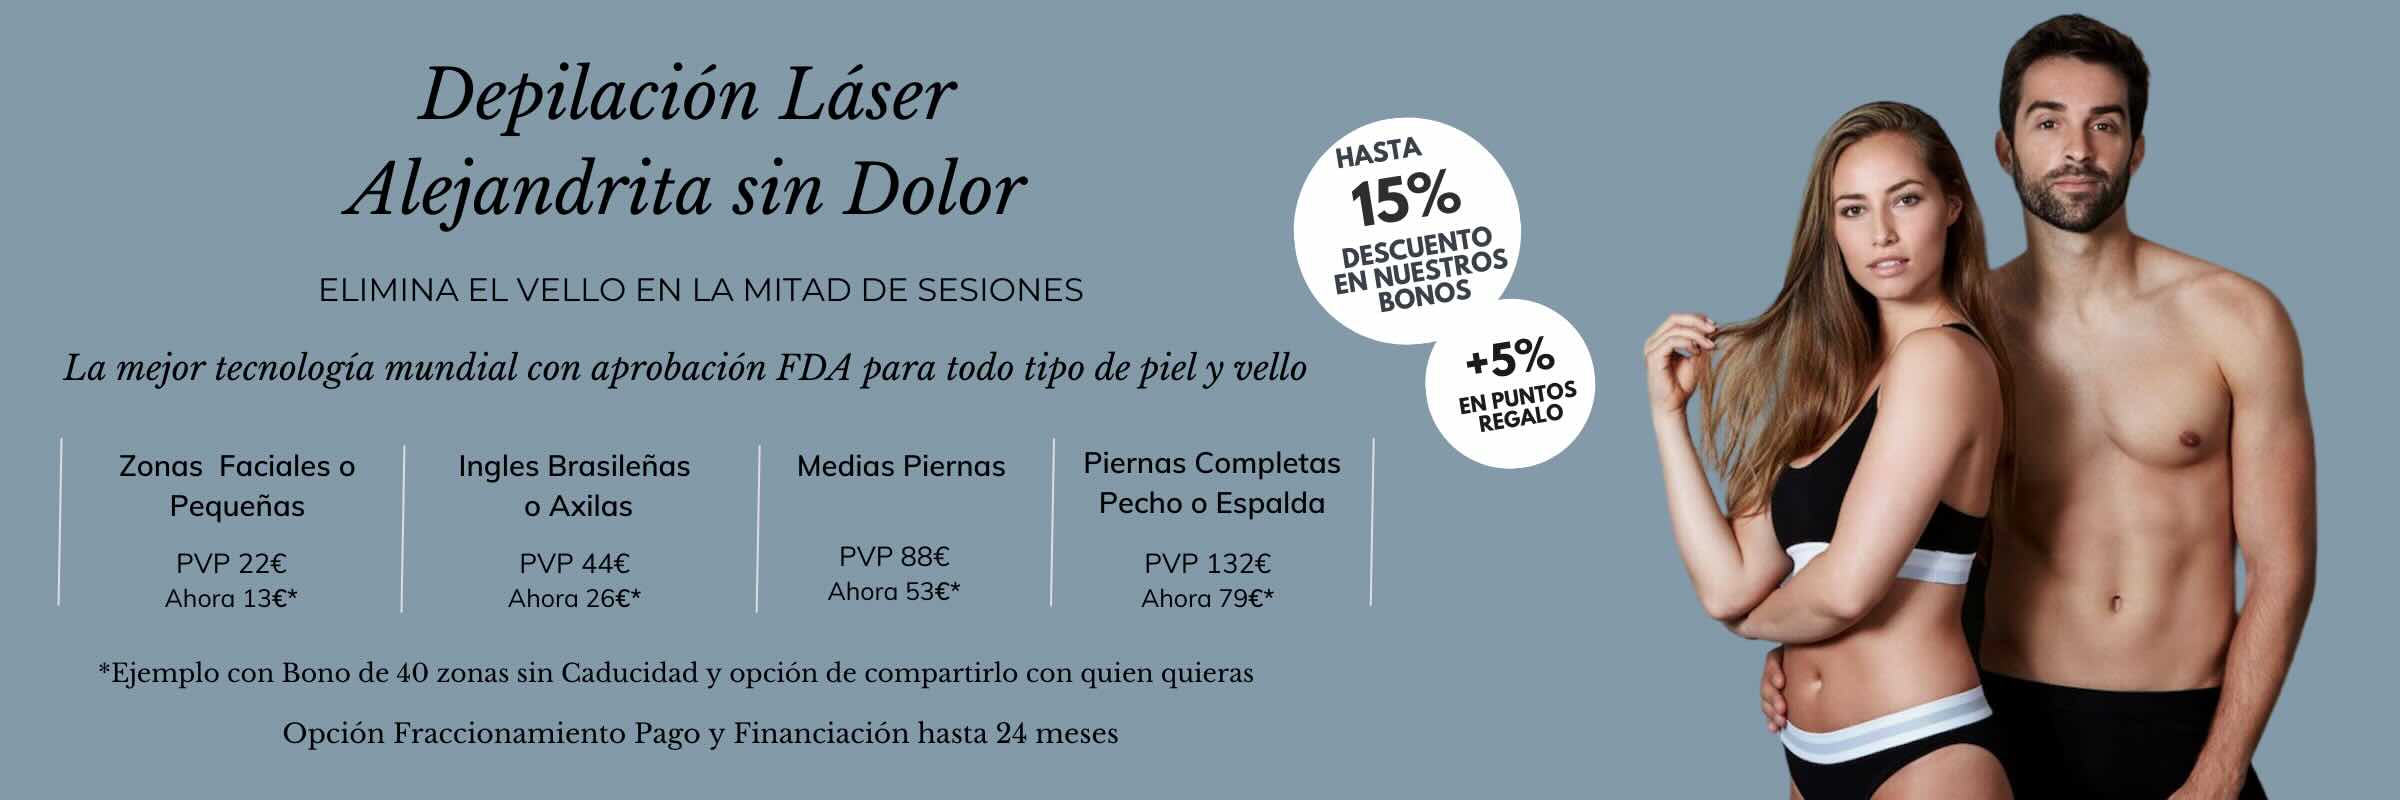 precios depilacion laser